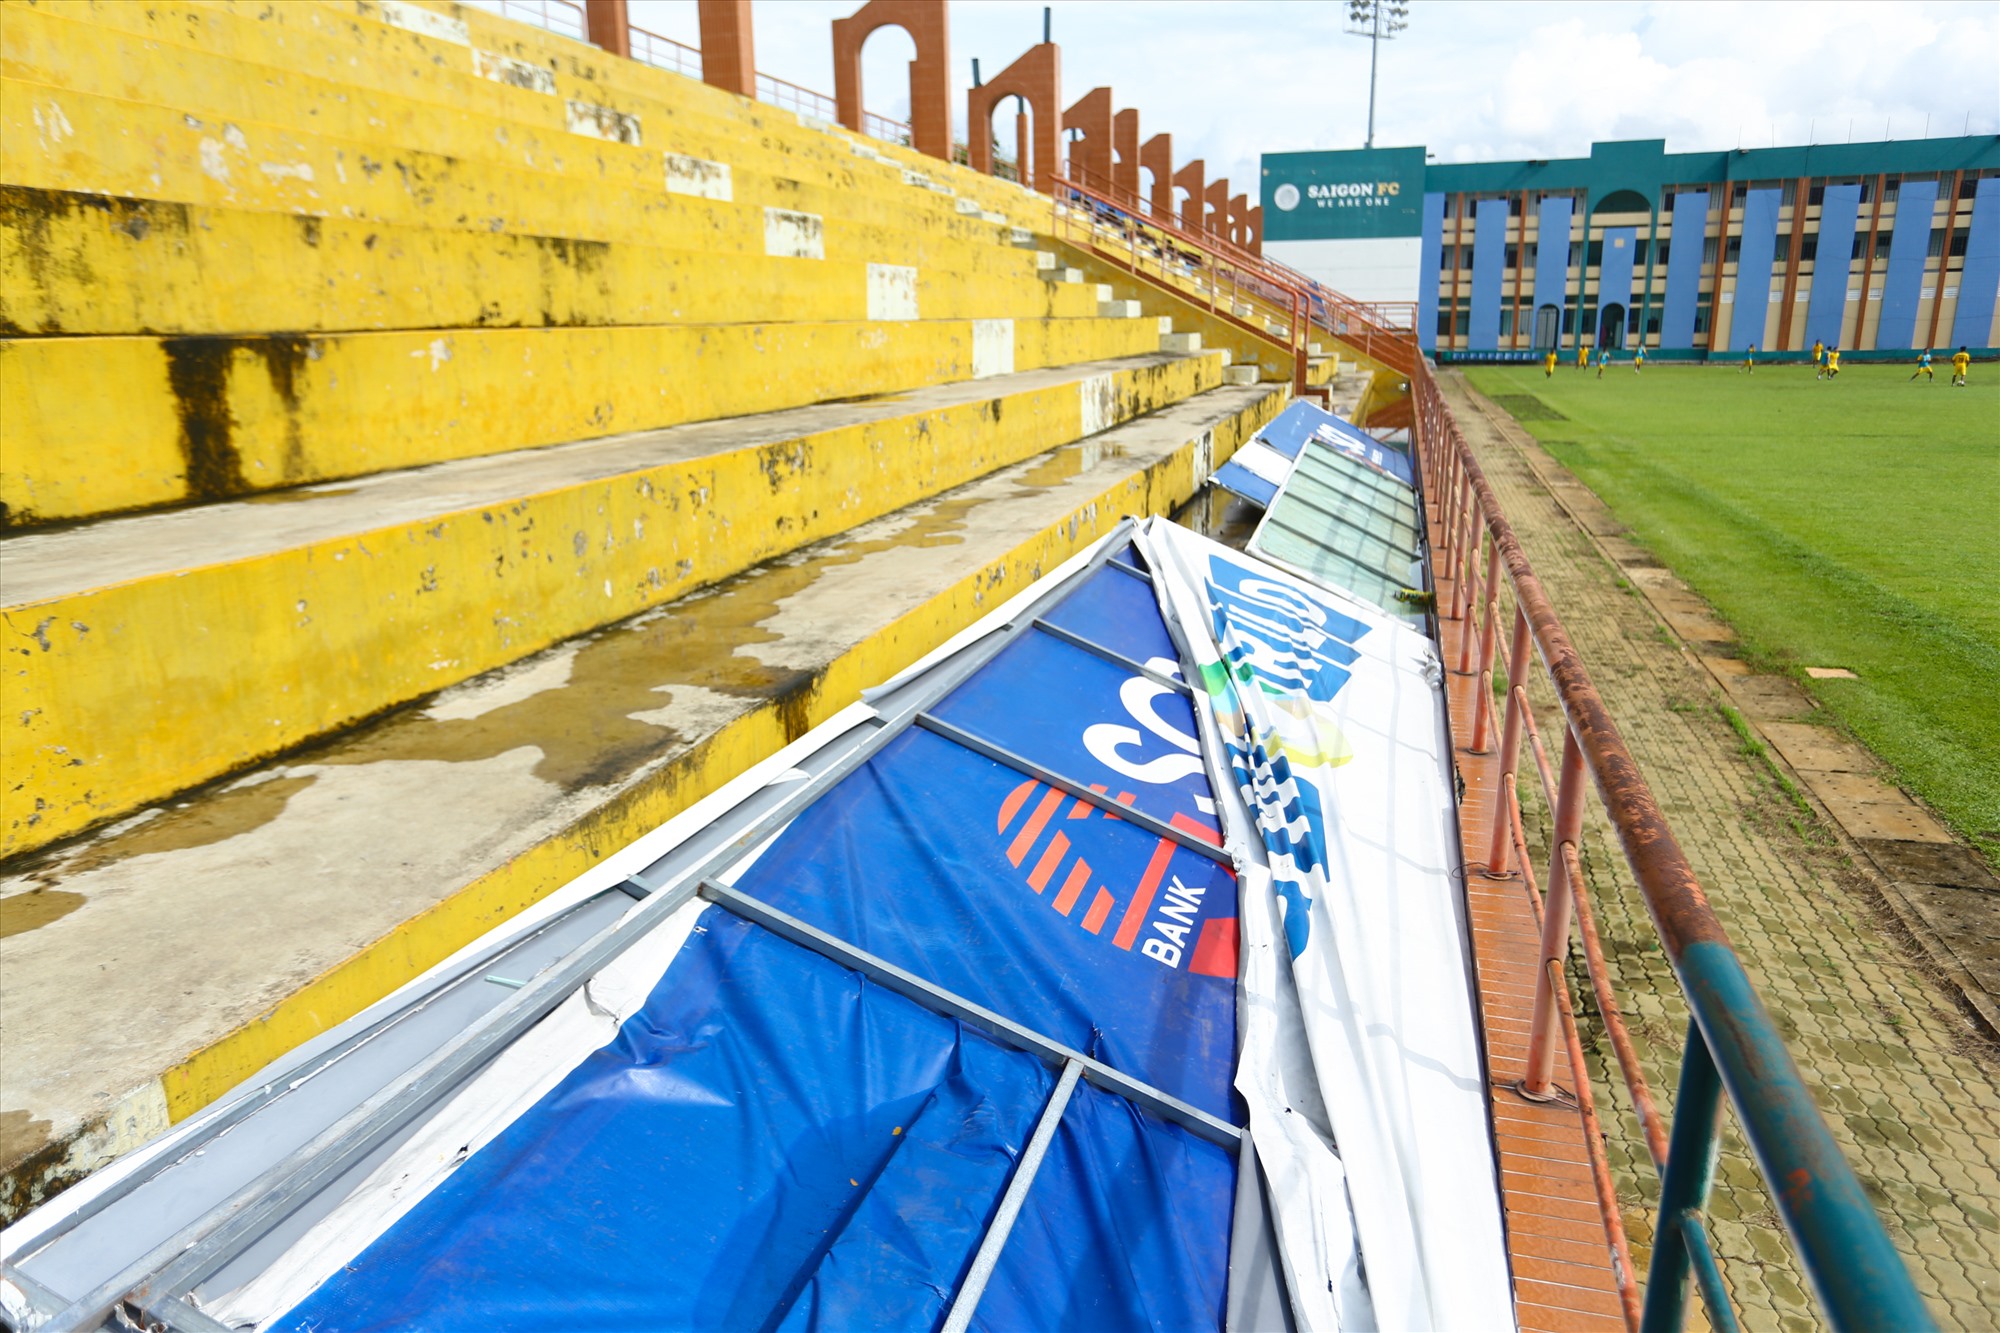 Khu vực khán đài sân vận động nhết nhác vì lâu ngày không được sơn sửa.